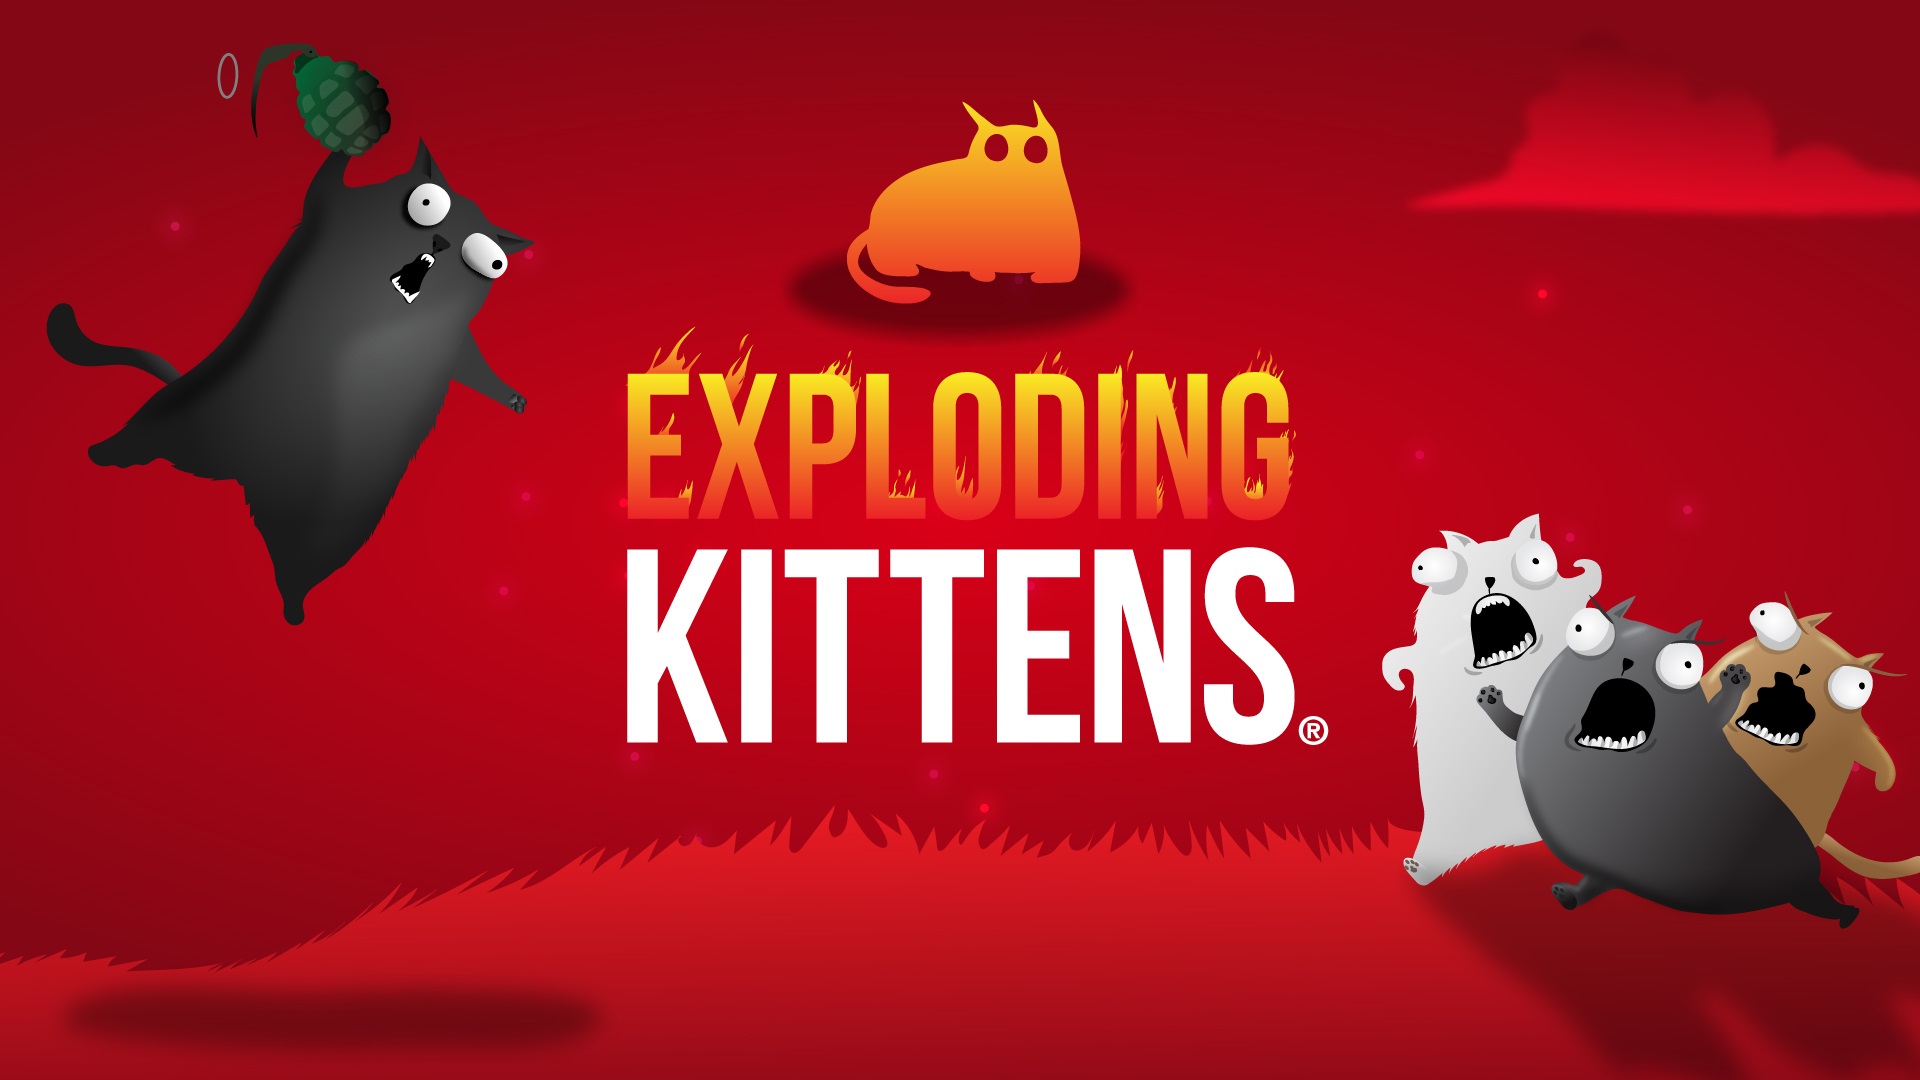 melhores jogos de tabuleiro para dois jogadores - um grupo de gatinhos de desenho animado cercam o logotipo Exploding Kittens, um gato está prestes a enterrar uma granada